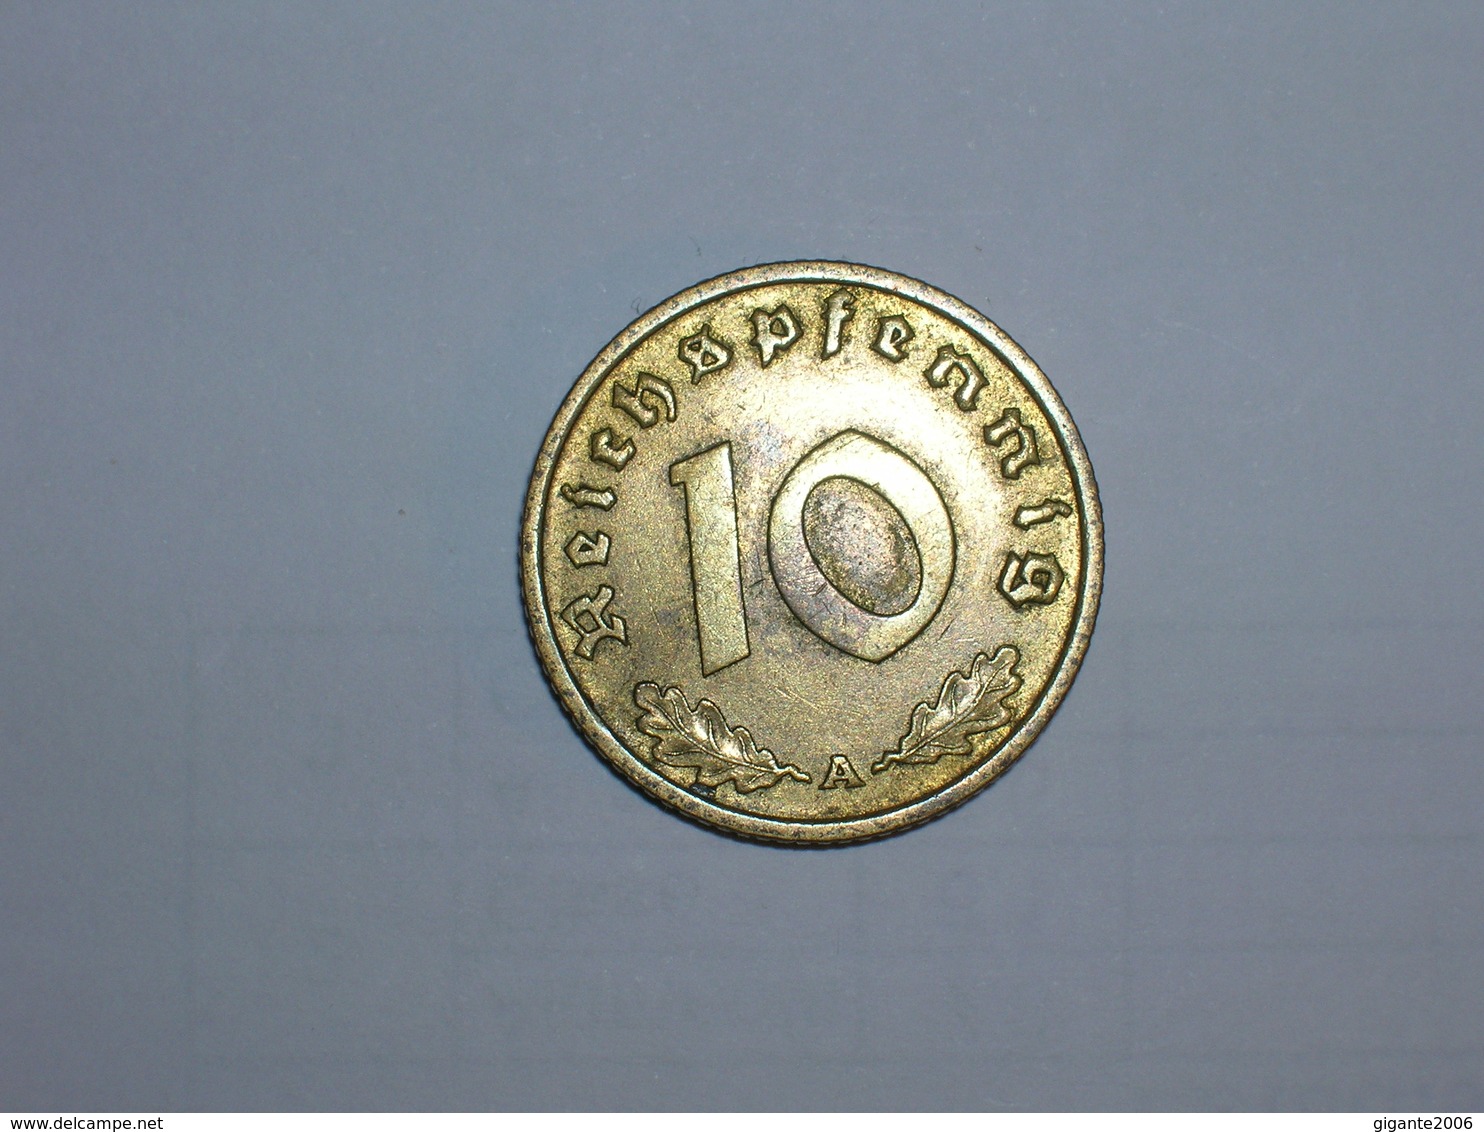 ALEMANIA- 10 PFENNIG 1937 A (911) - 10 Reichspfennig